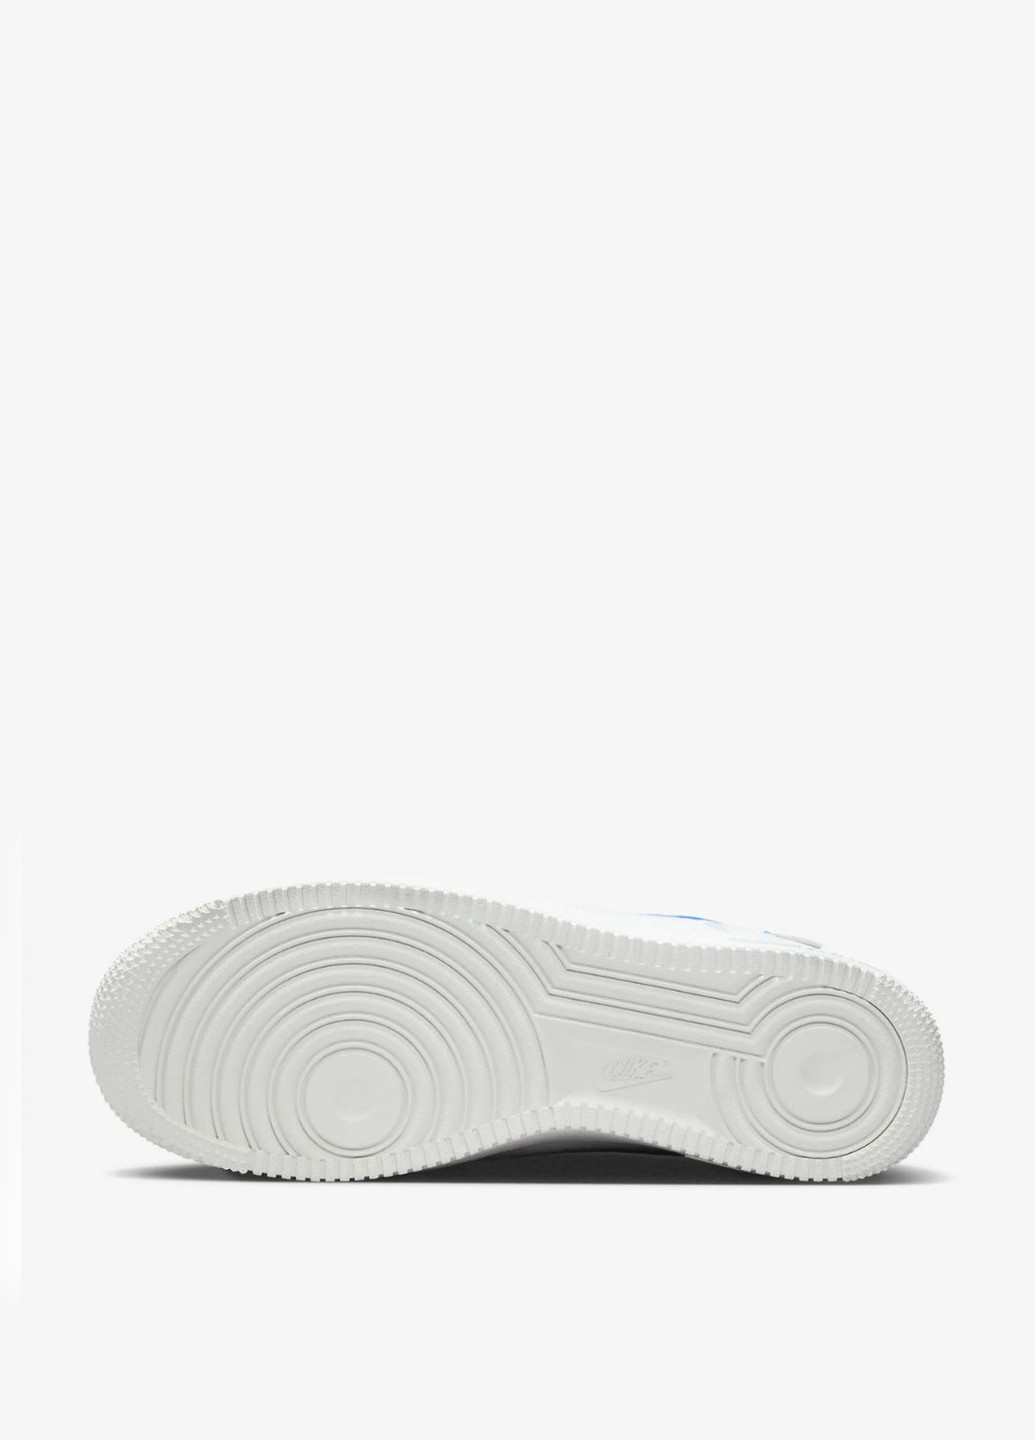 Белые демисезонные кроссовки fn7804-100_2024 Nike AIR FORCE 1 07